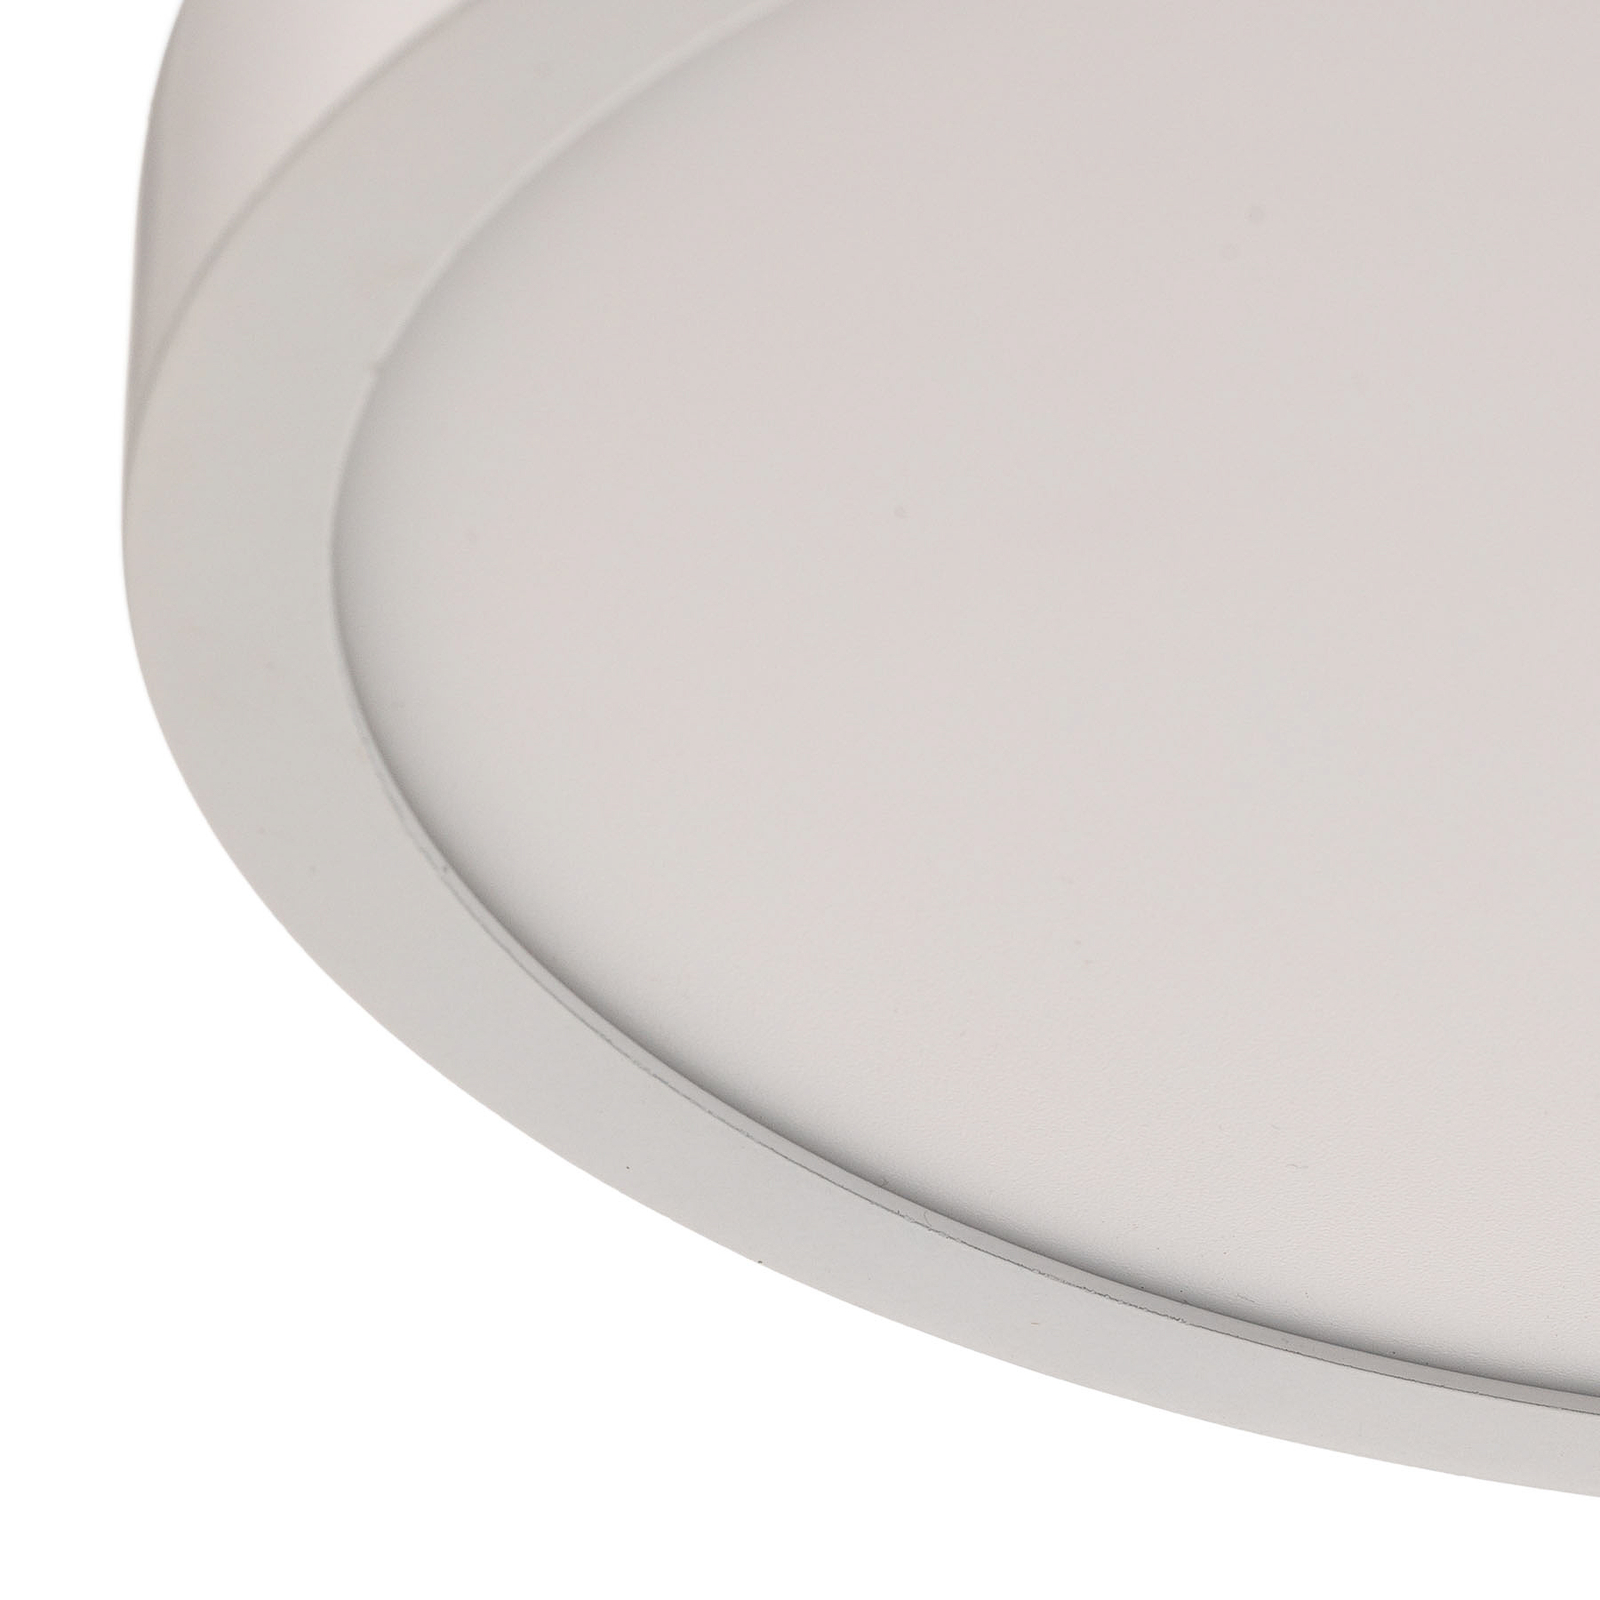 LED-Deckenleuchte Vika, rund, weiß, Ø 23cm